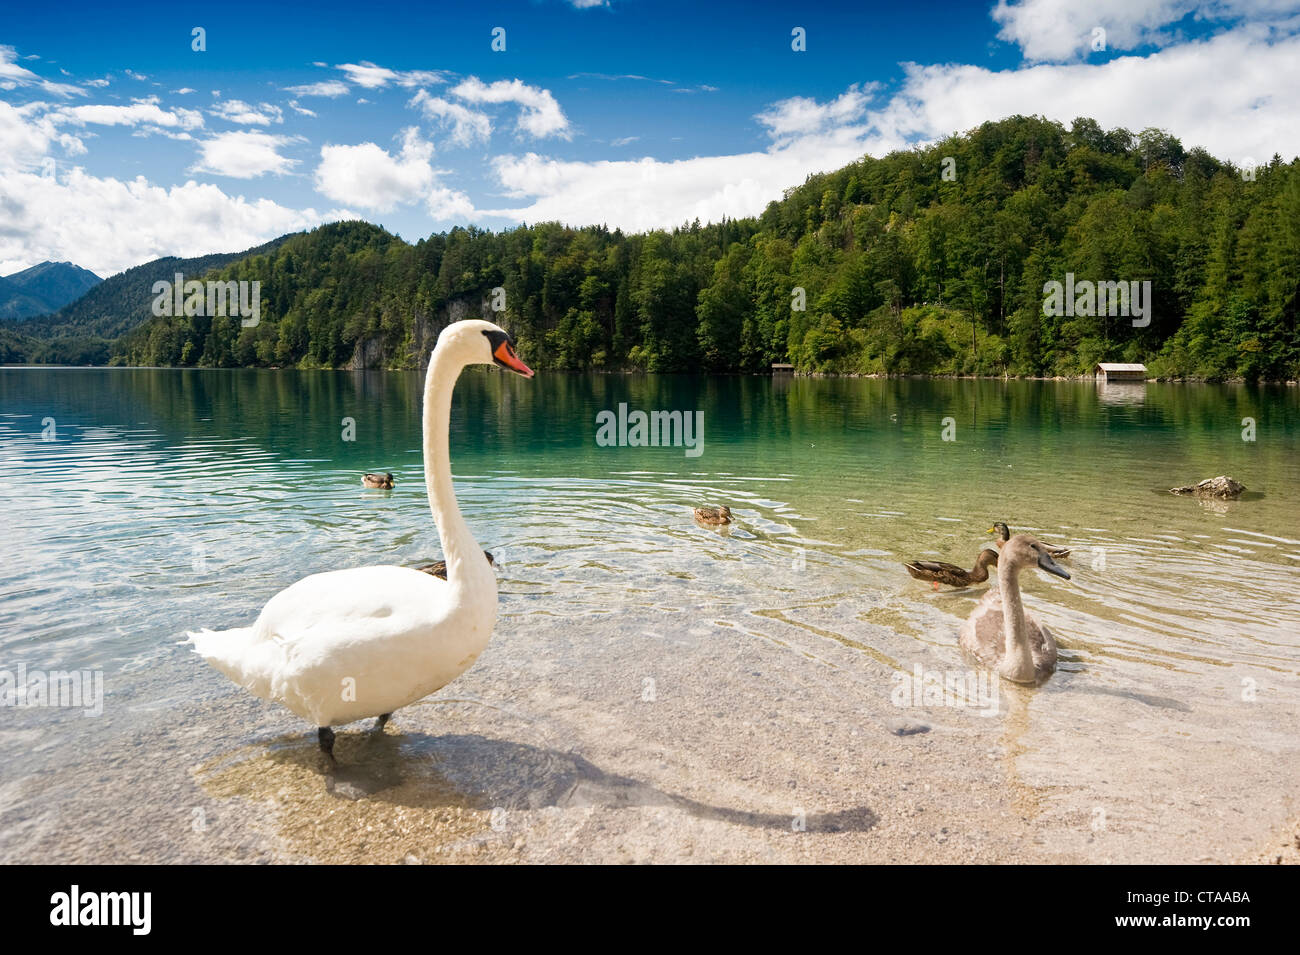 Cygne au lac Alpsee, Allgau, Bavière, Allemagne Banque D'Images